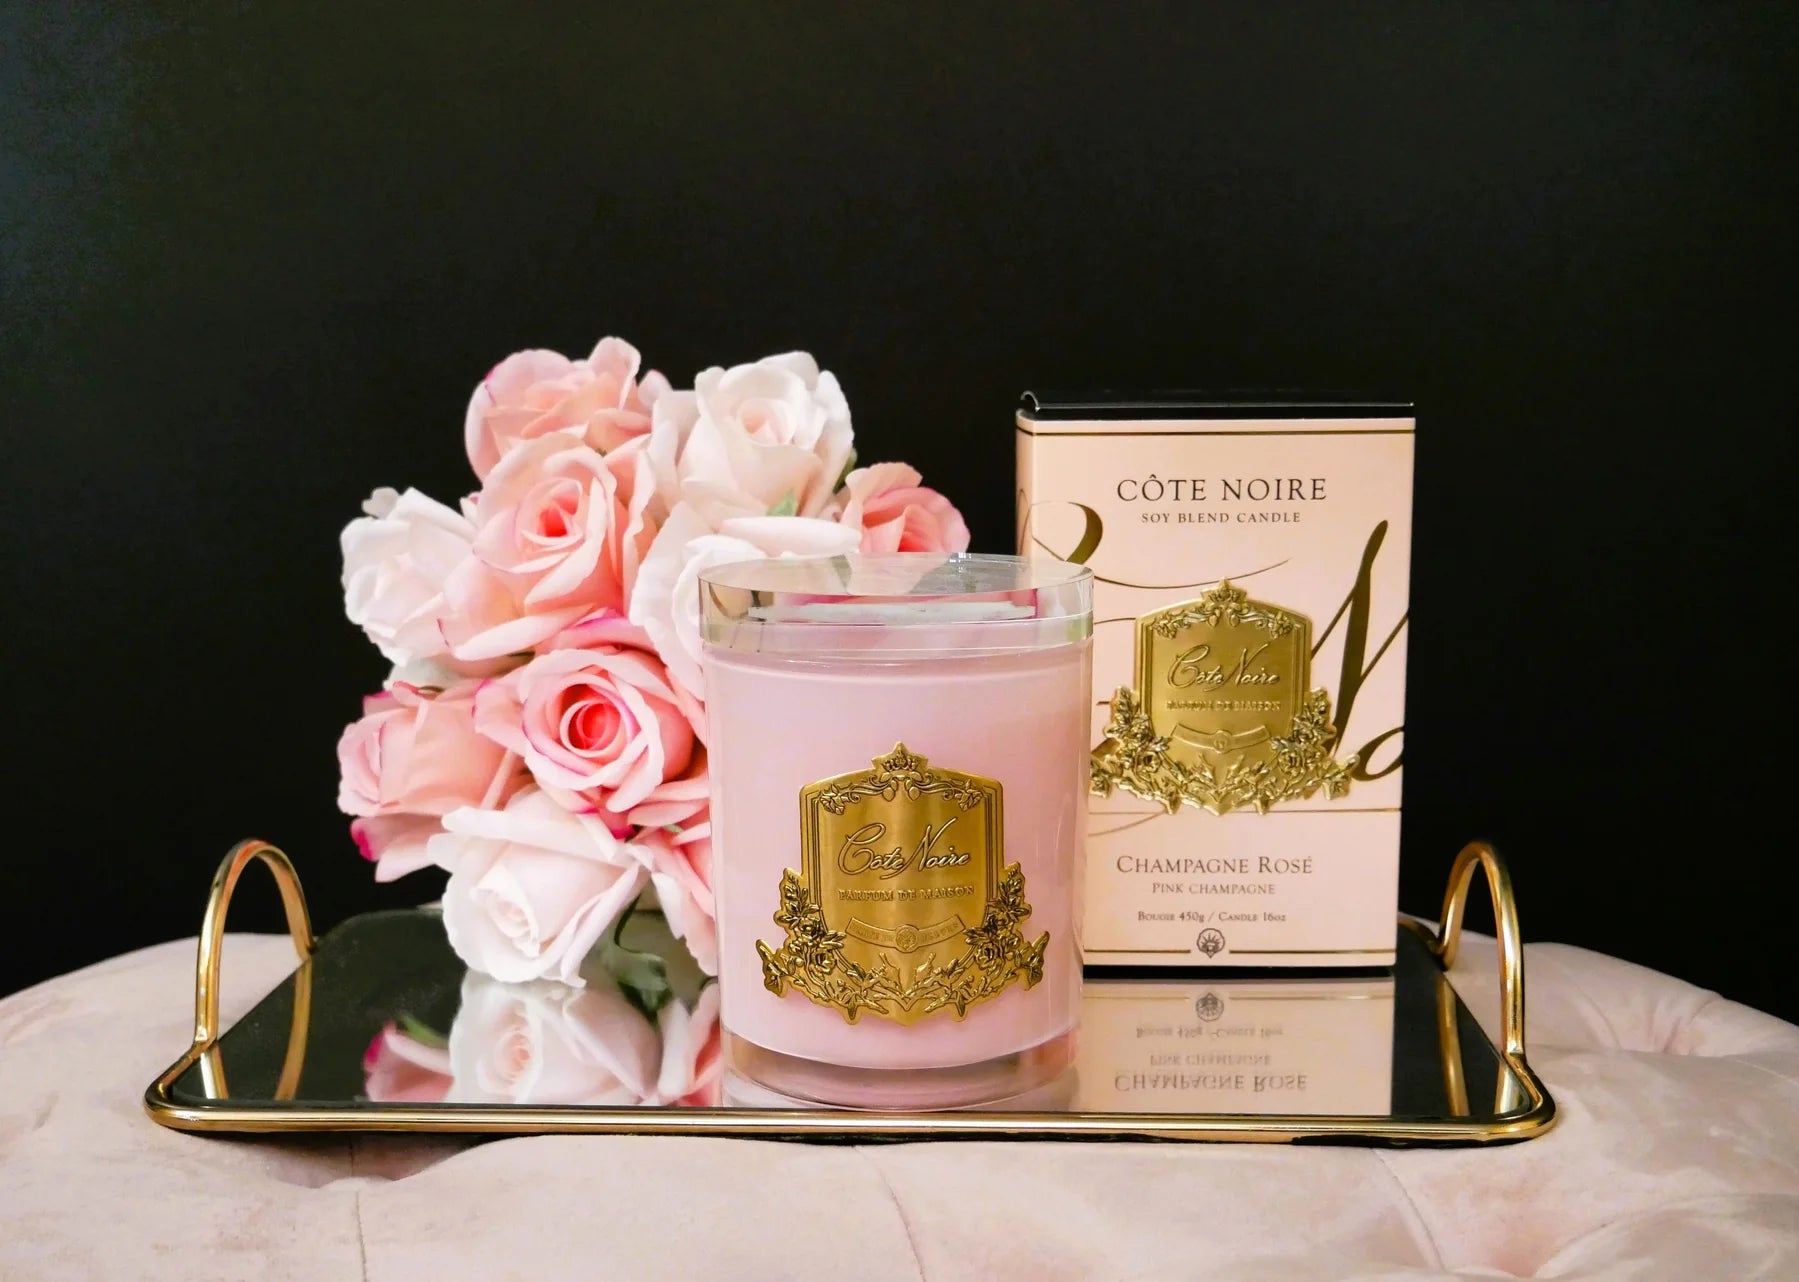 pinke duftkerze mit goldener inschrift, dahinter verpackung und duftblumen in pink auf goldenem serviertablett. frontansicht